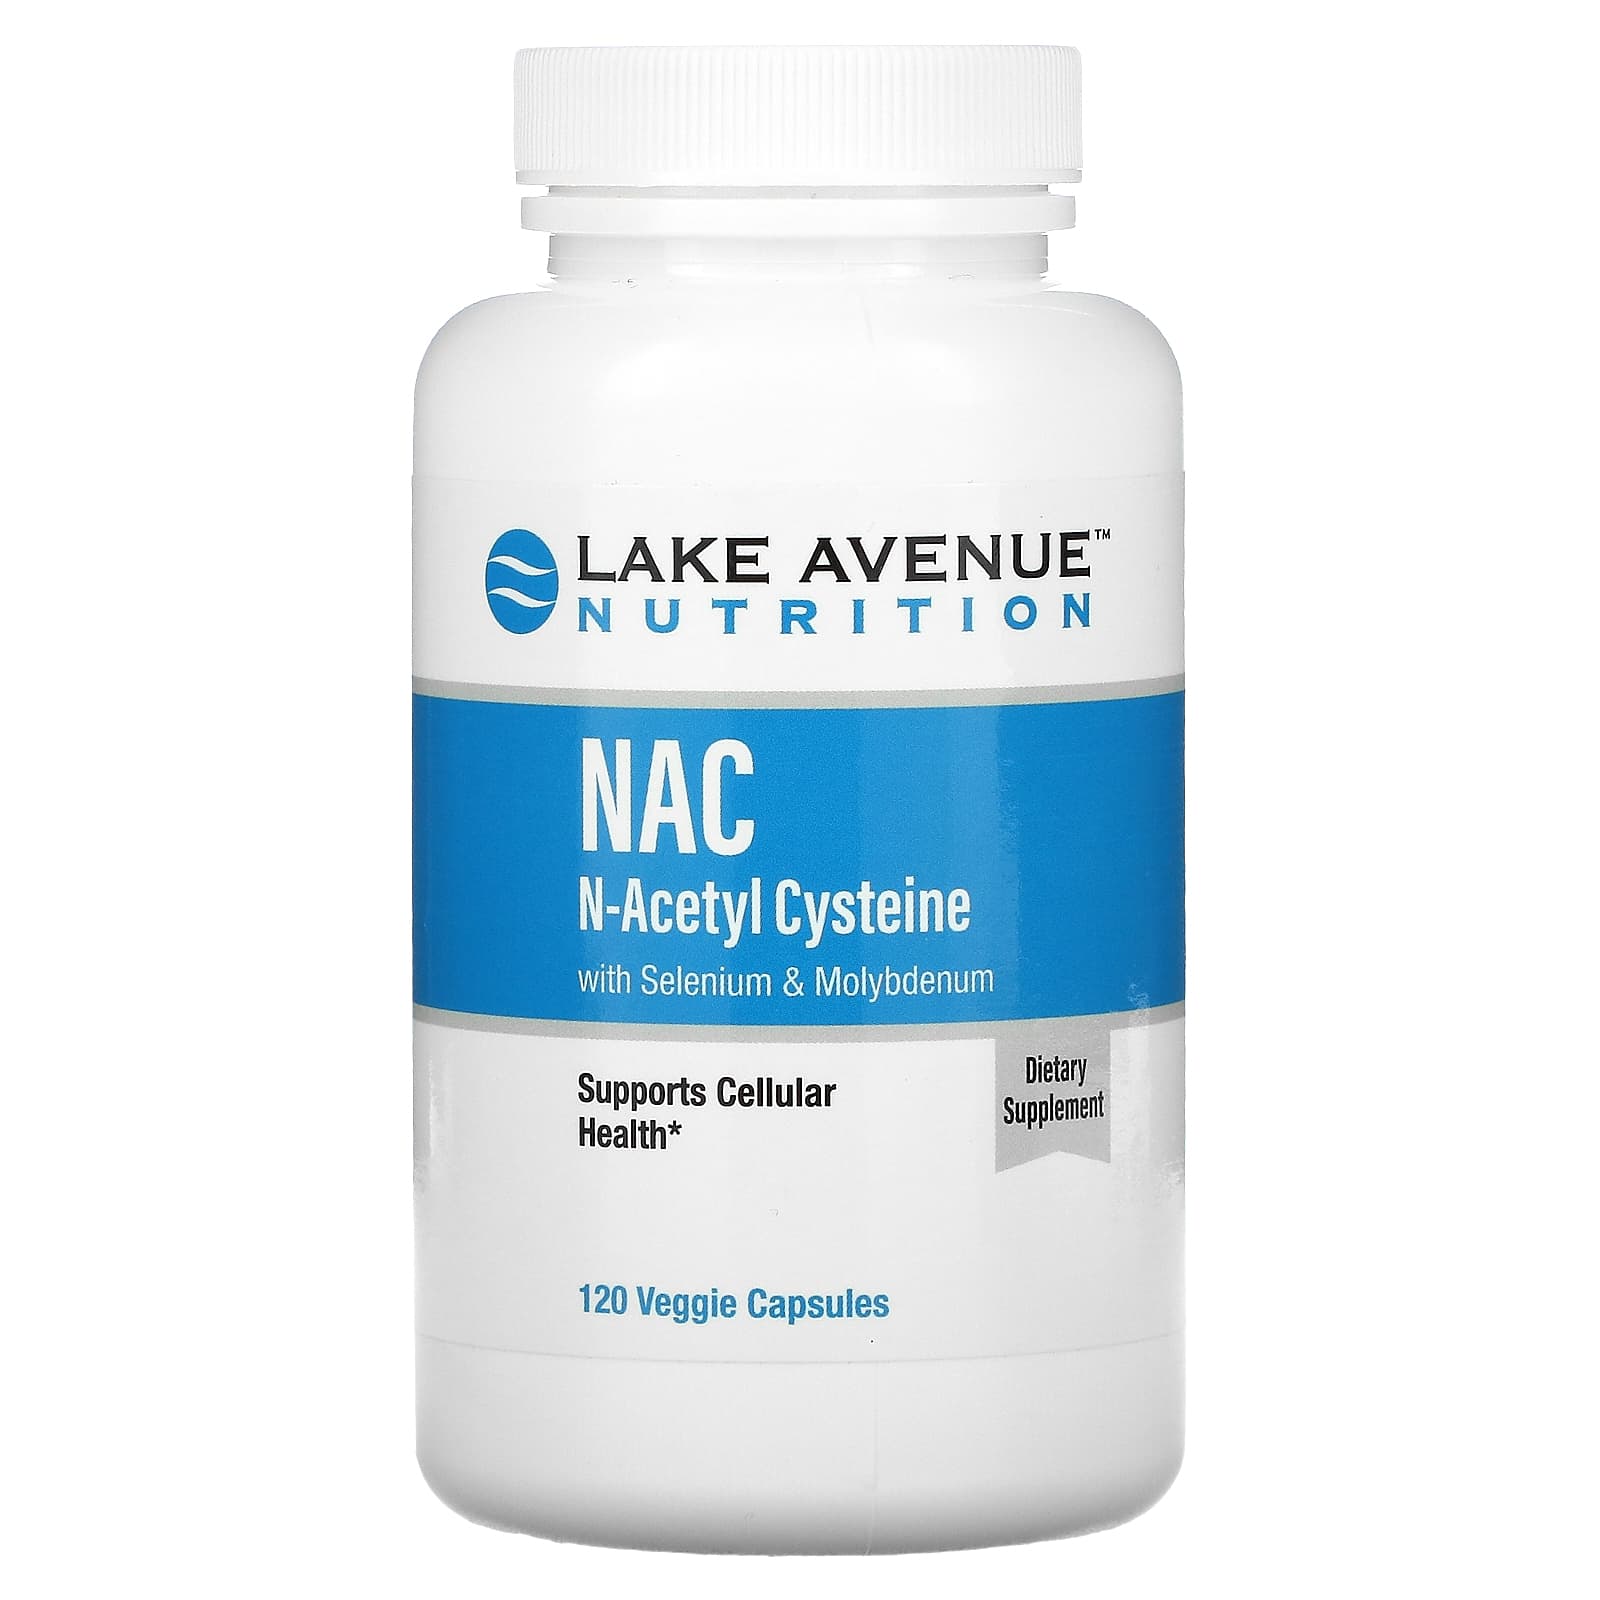 Nac supplement